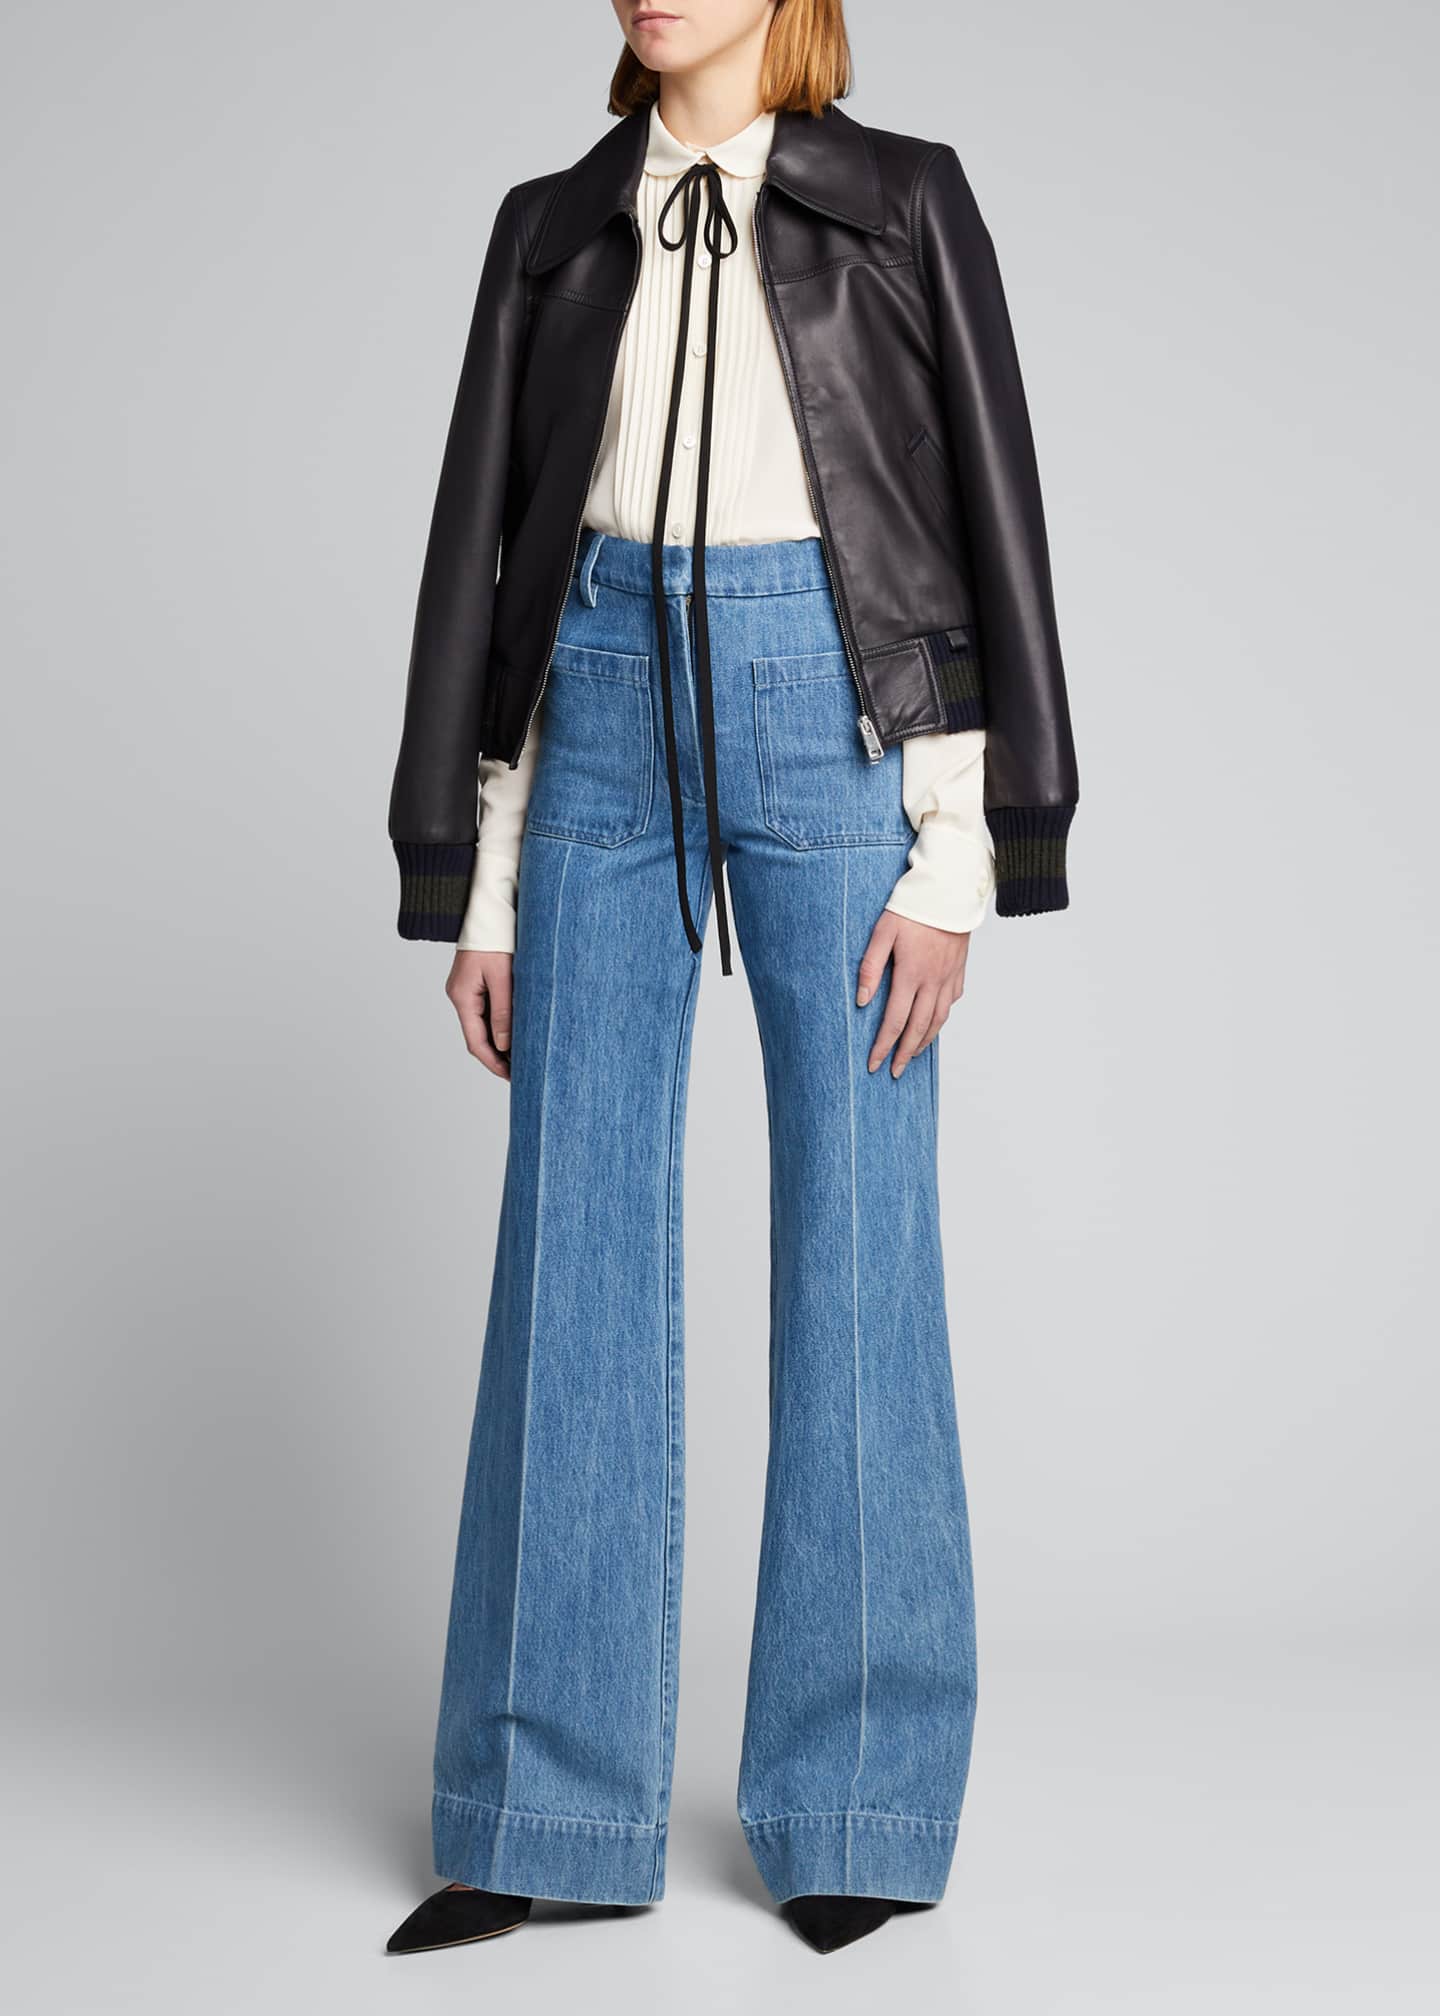 Victoria Beckham High-Waist Patch Pocket Denim Jeans - Bergdorf Goodman